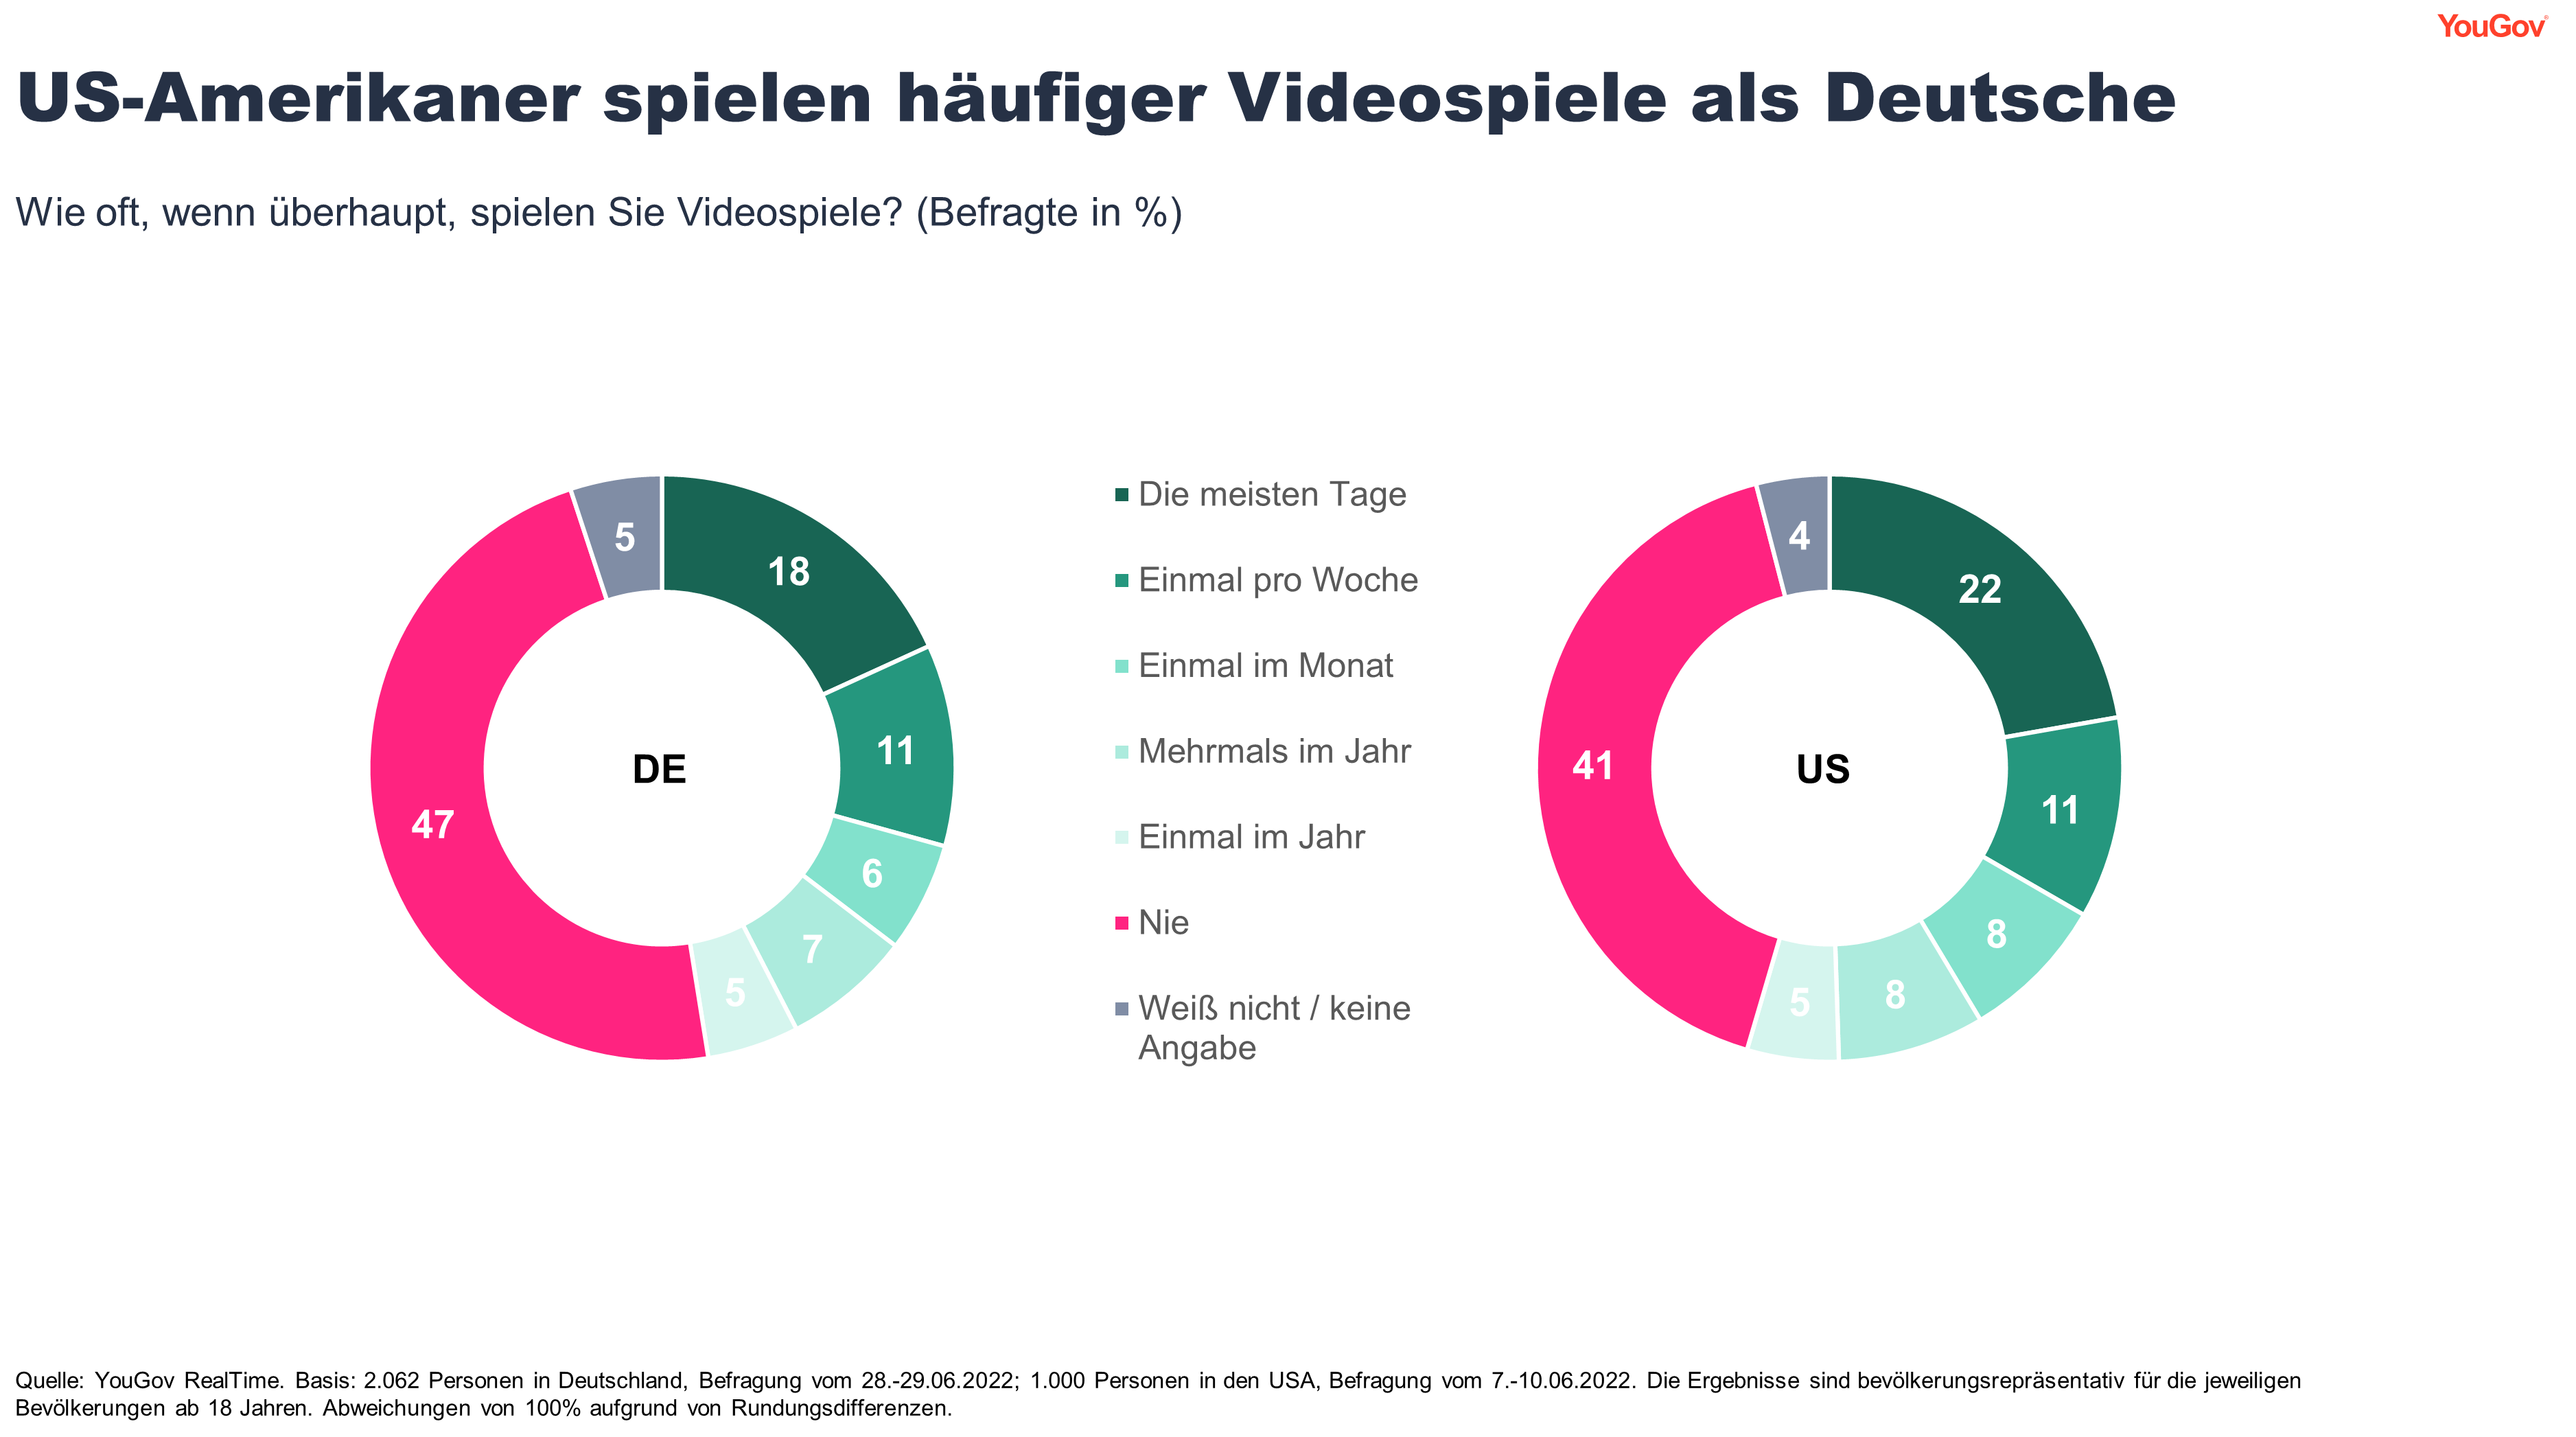 Videospielhäufigkeit in Deutschland und den USA